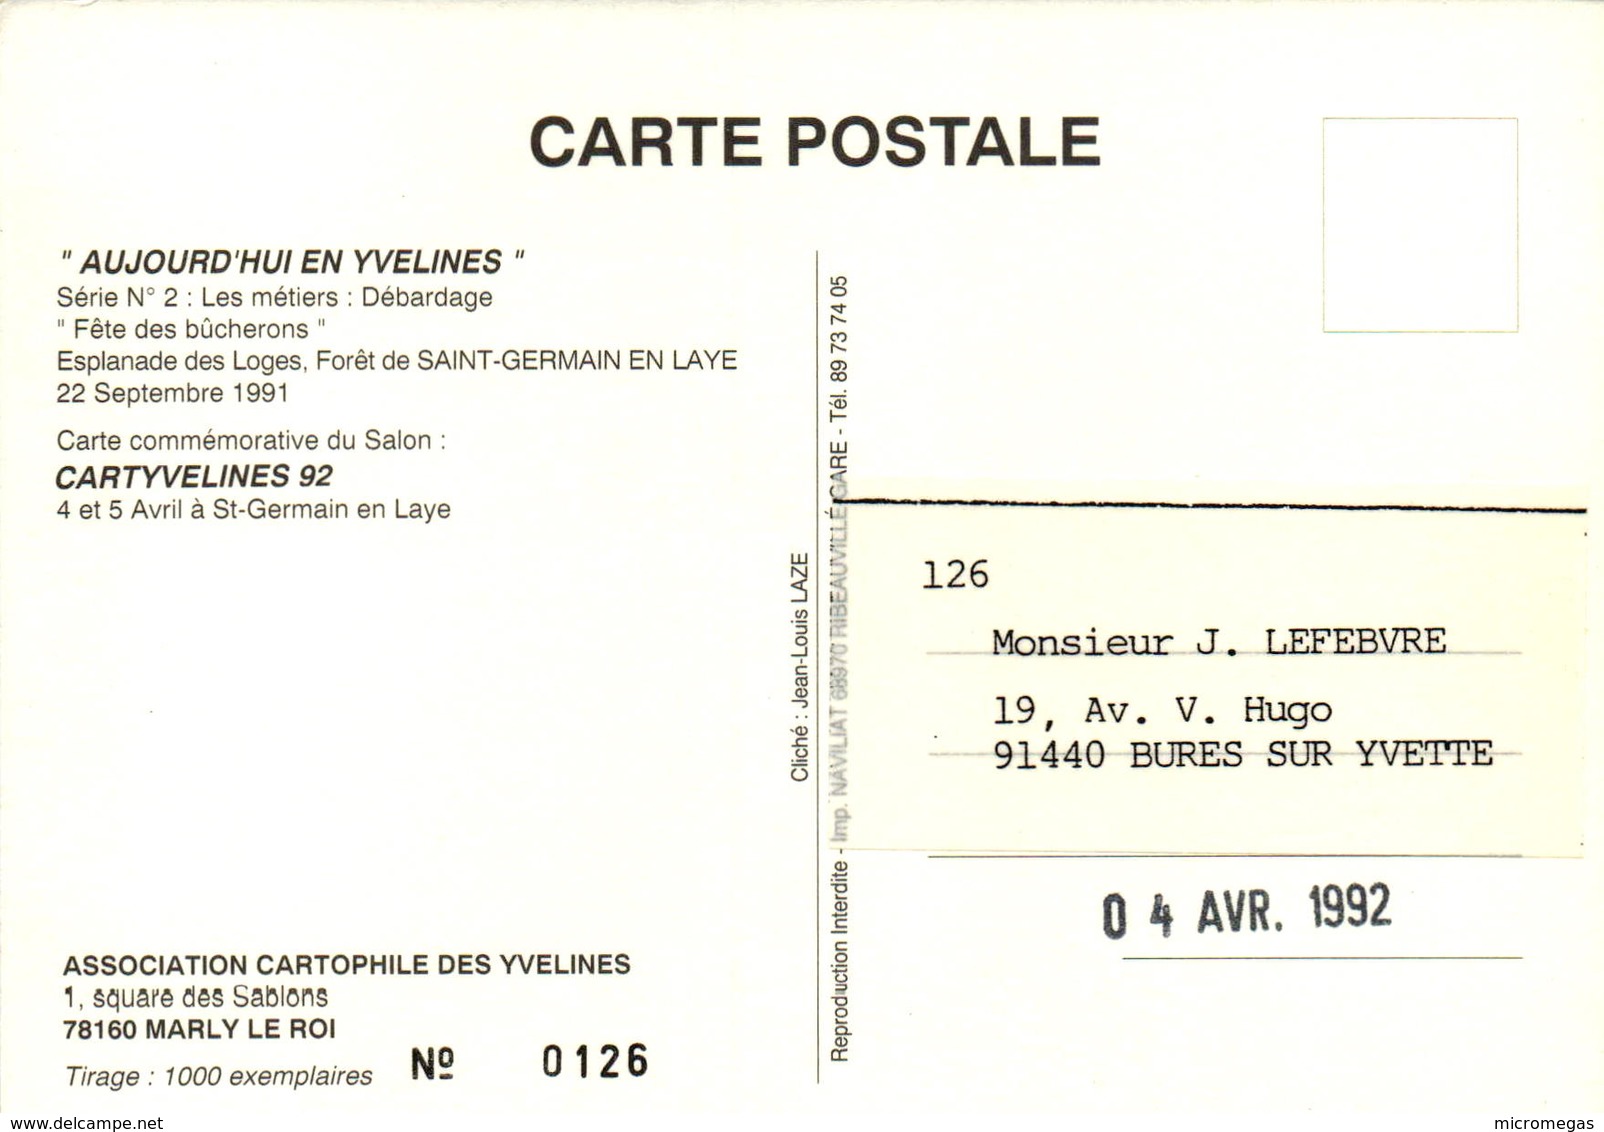 Carte Commémorative Du Salon Cartyvelines 92 - Débardage - Bourses & Salons De Collections